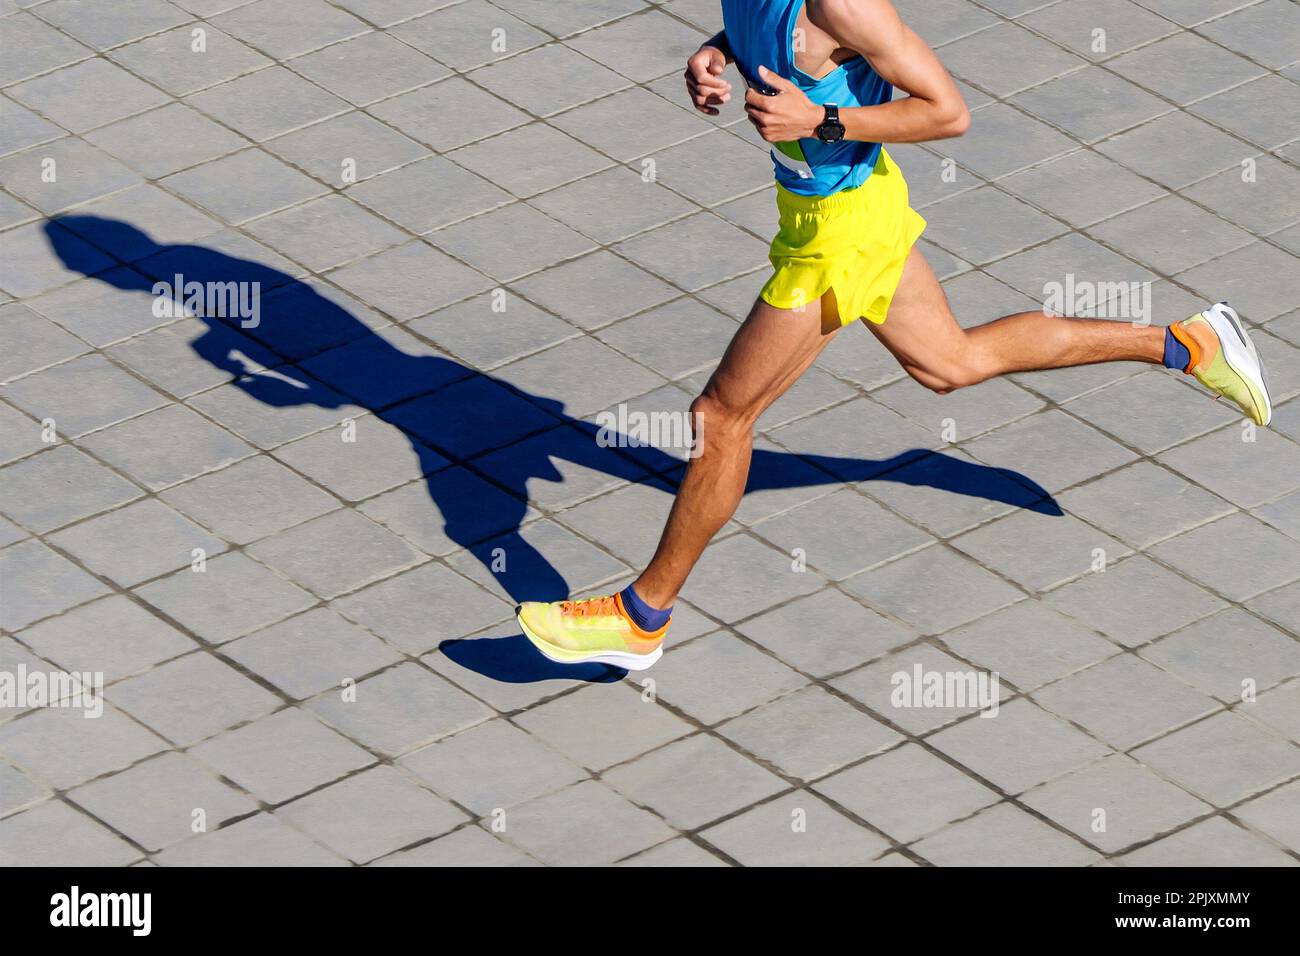 vue de dessus coureur de course marathon, jogging d'ombre sur les dalles, chronomètre sur la main de l'athlète Banque D'Images